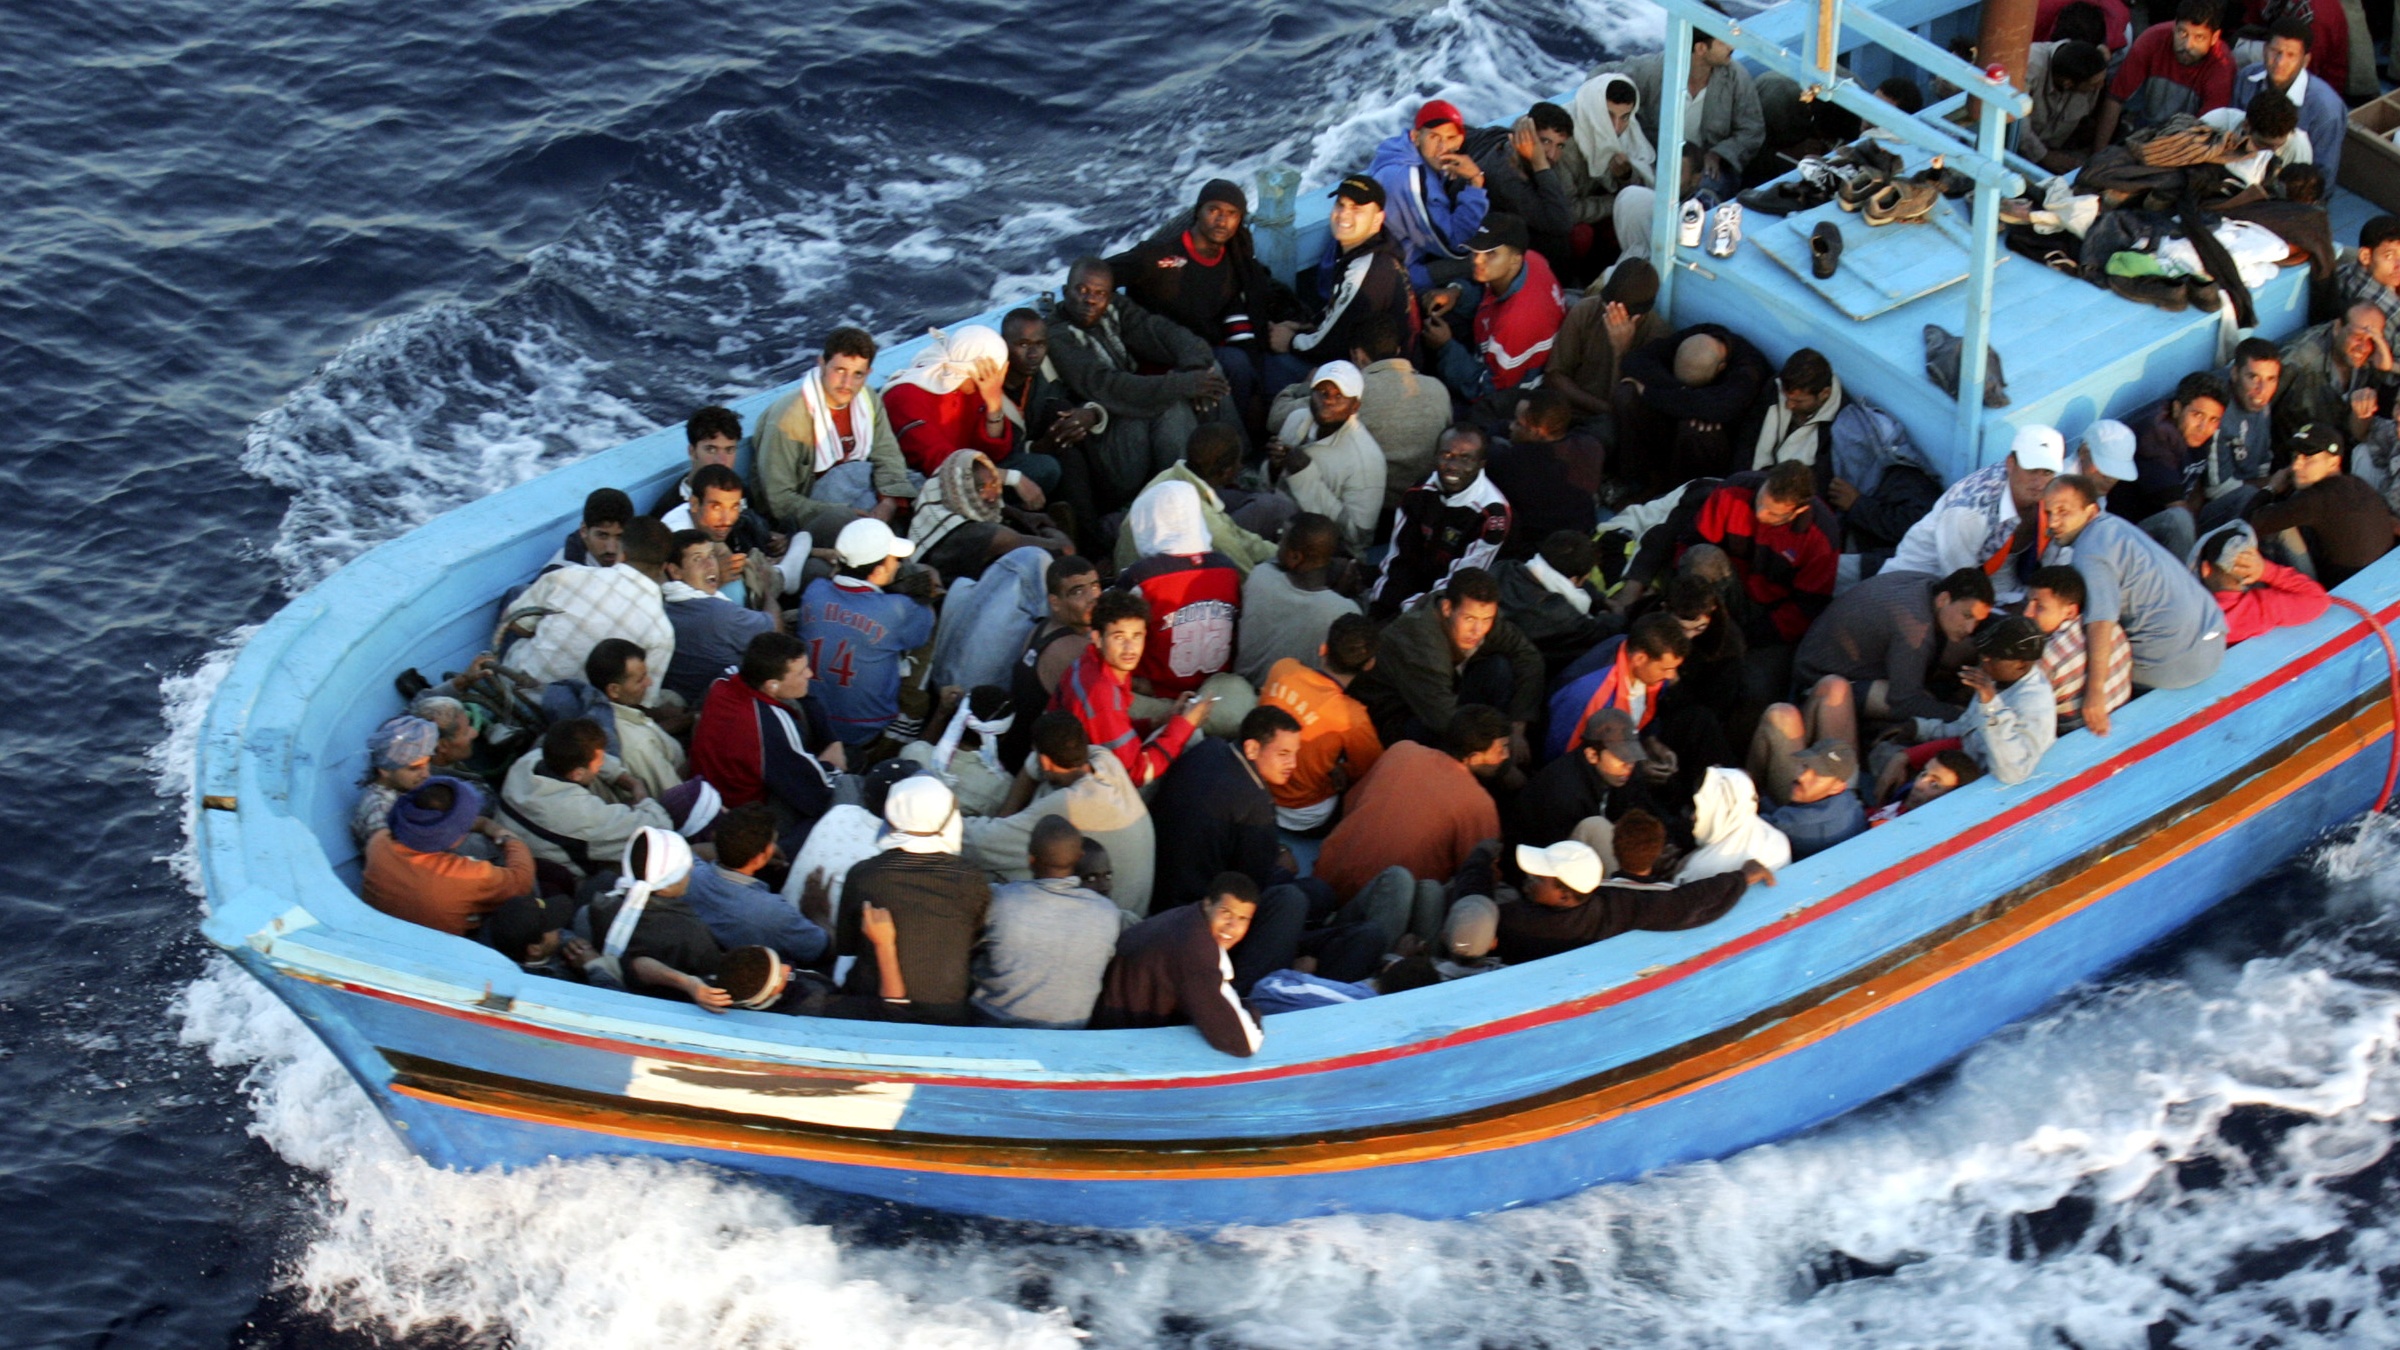 Σκάφος με 50 μουσουλμάνους πλέει στην κεντρική Μεσόγειο – Είχε ξεκινήσει από τη Λιβύη